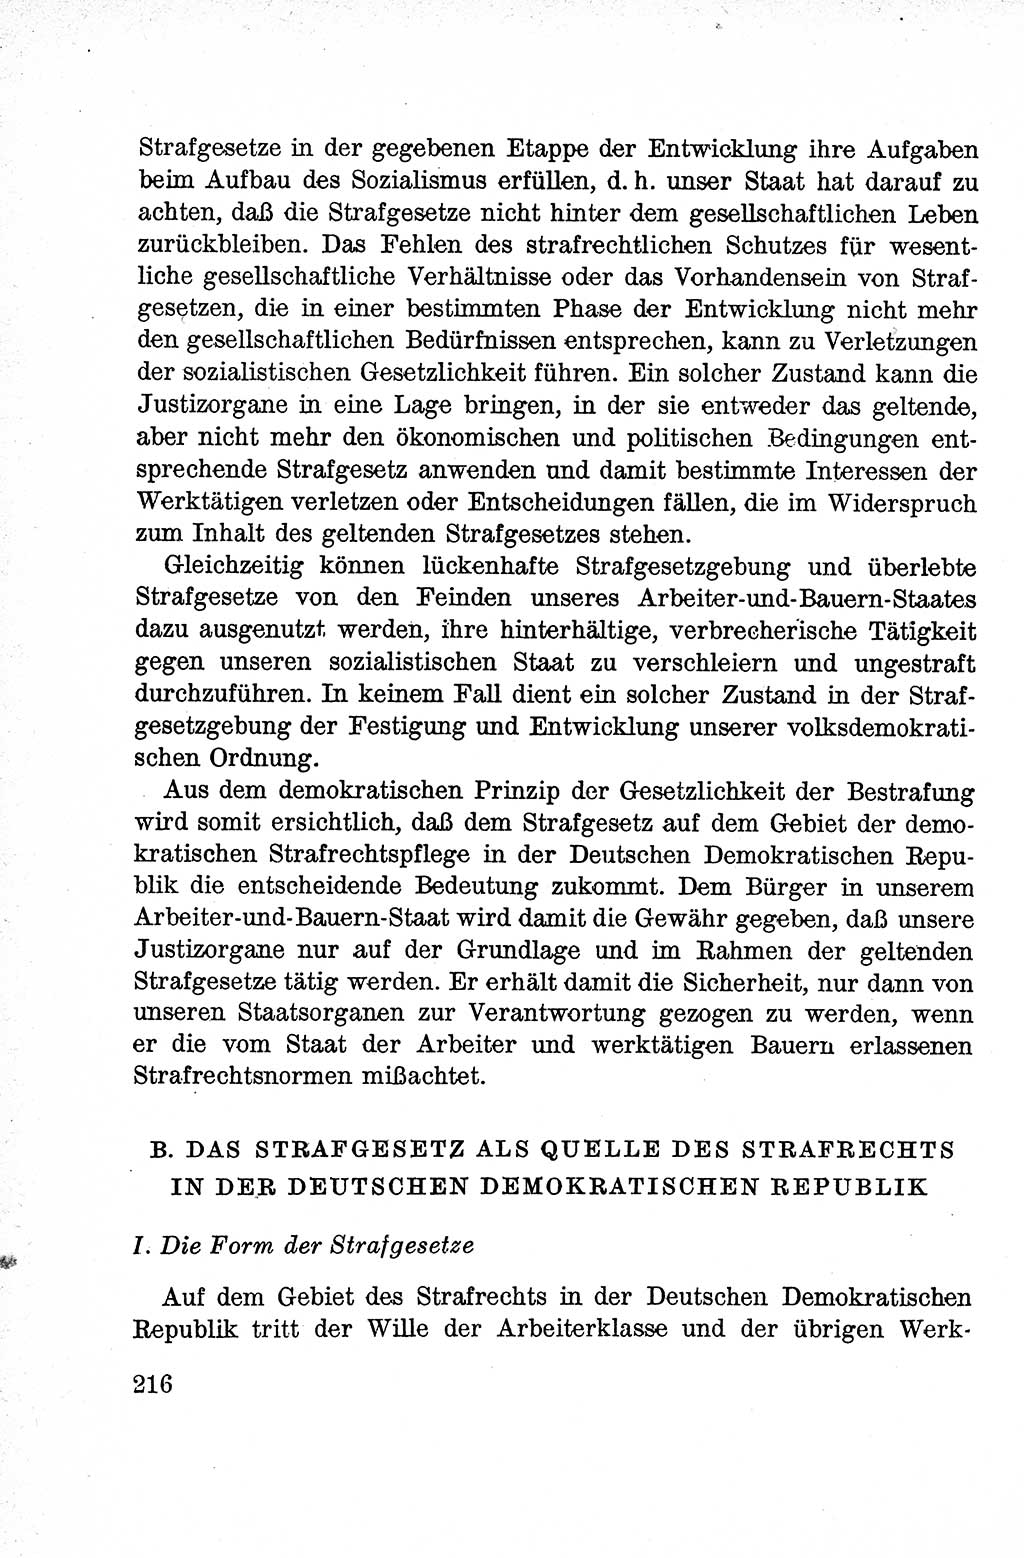 Lehrbuch des Strafrechts der Deutschen Demokratischen Republik (DDR), Allgemeiner Teil 1959, Seite 216 (Lb. Strafr. DDR AT 1959, S. 216)